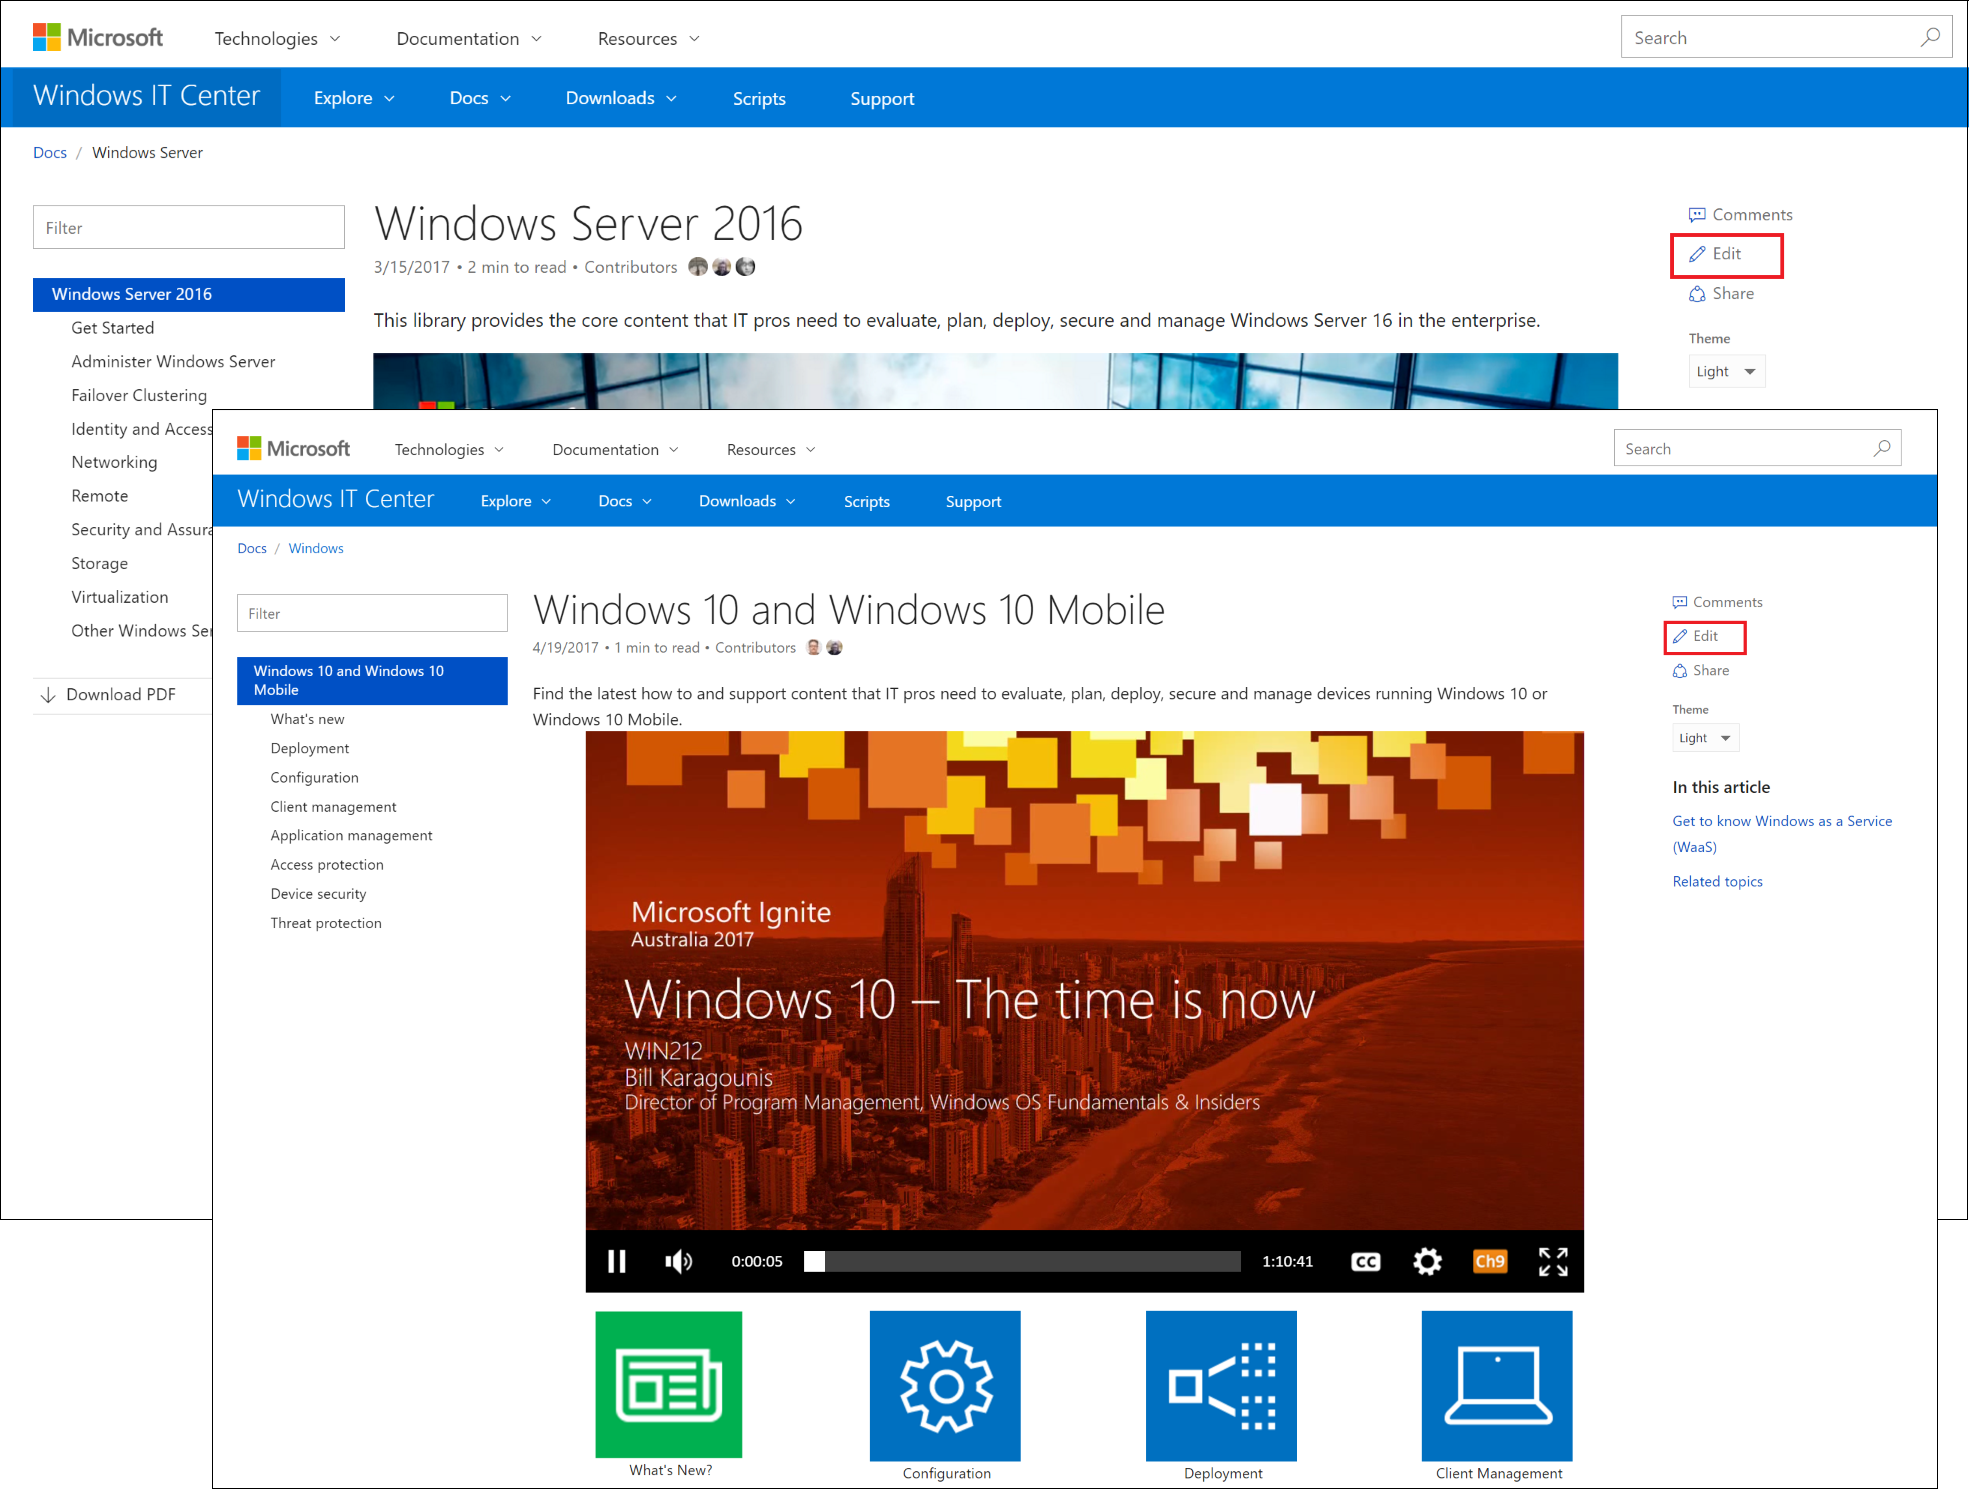 Pages d’arrivée pour Windows 10, Windows 10 Mobile et Windows Server 2016 sur docs.microsoft.com